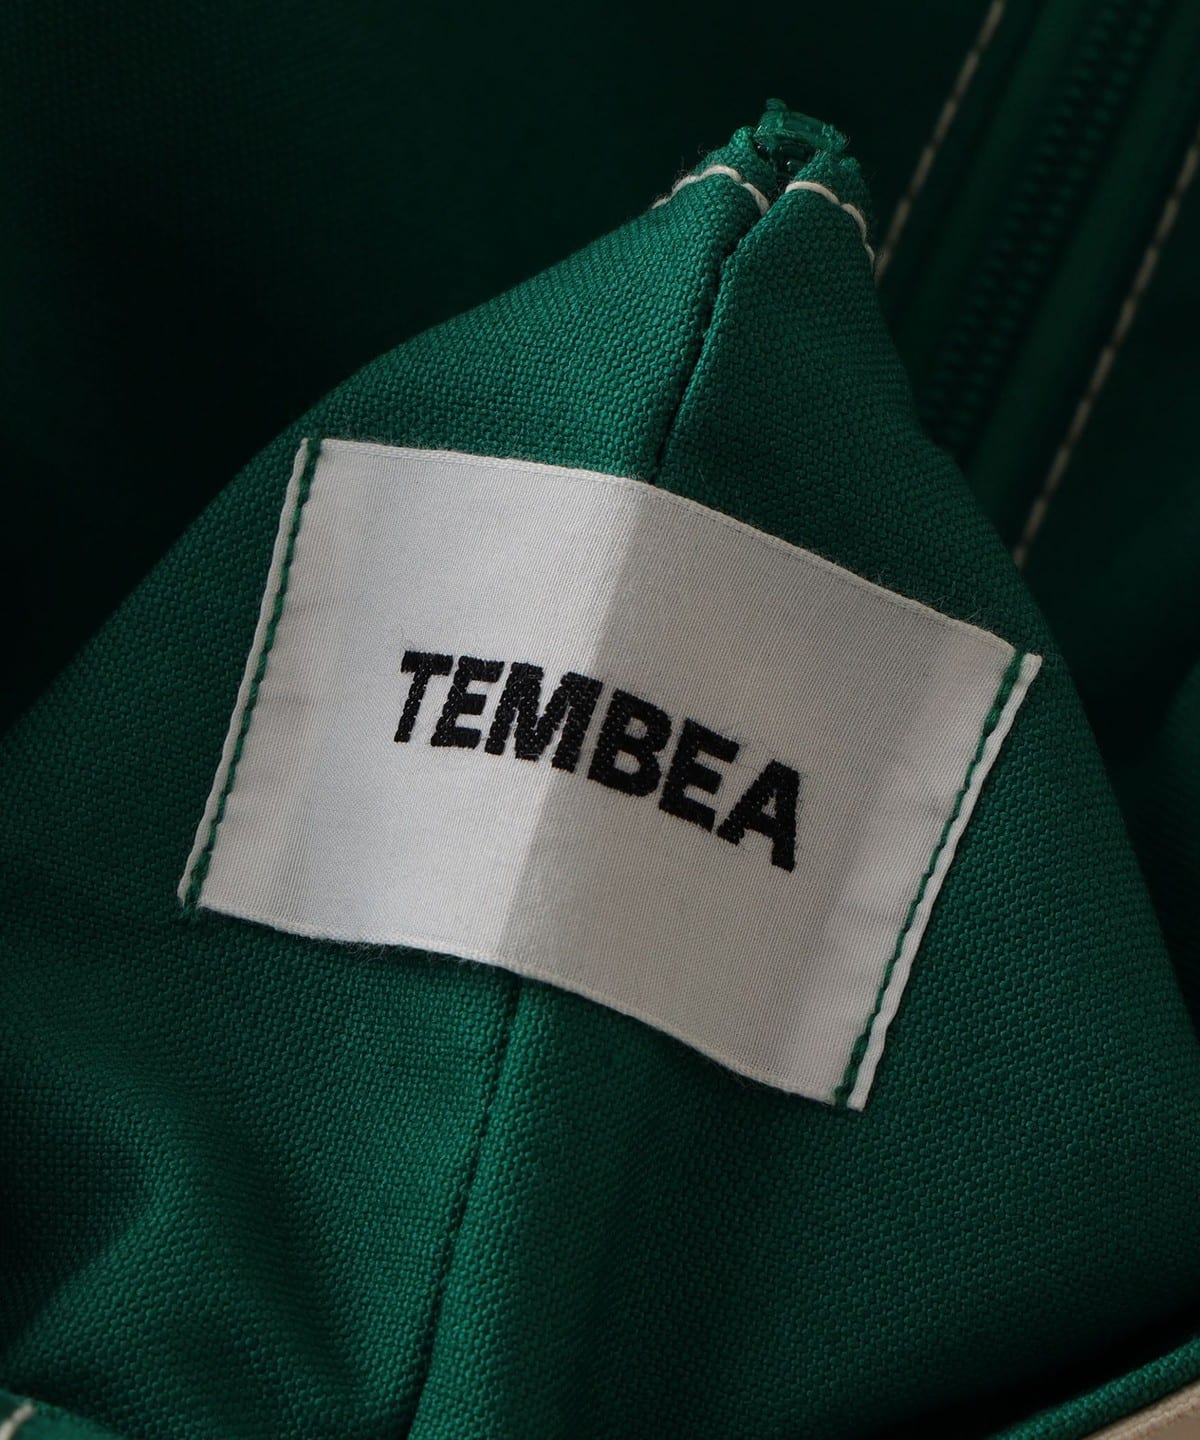 merrier BEAMS（メリア ビームス）TEMBEA × こども ビームス / 別注